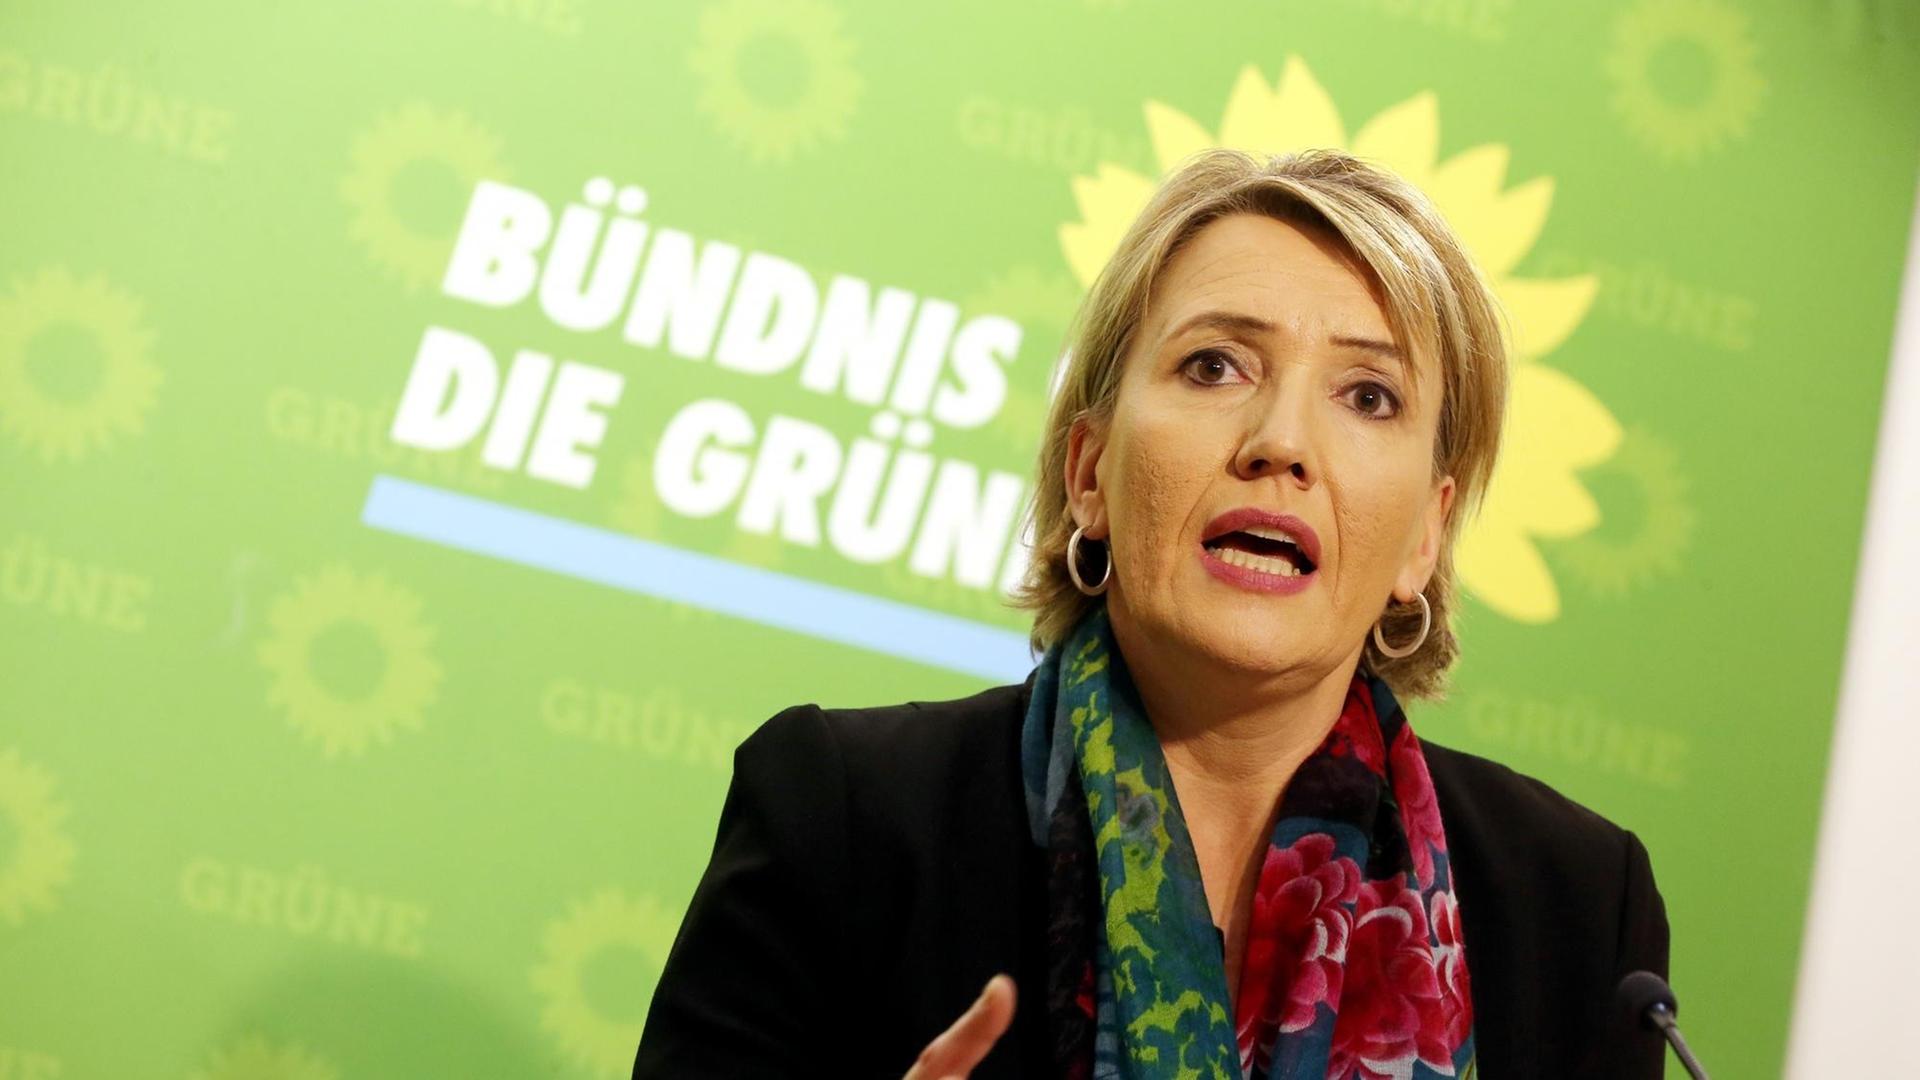 Die Bundesvorsitzende der Grünen, Simone Peter.